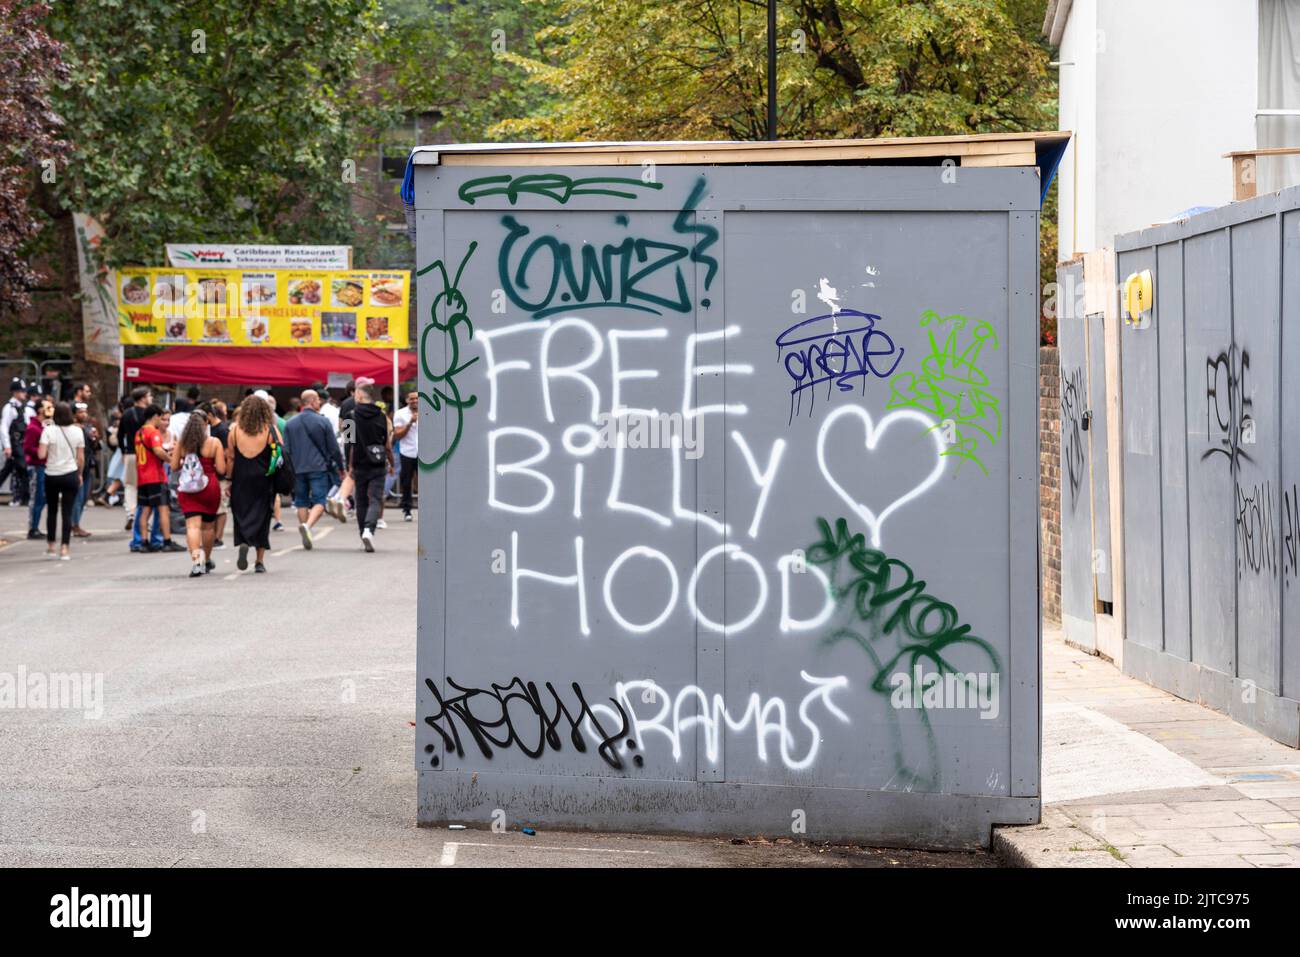 Temporäre Toiletten am Notting Hill Carnival mit kostenlosen Billy Hood-Graffiti. Billy Hood ist ein 24-jähriger Profi-Fußballer, der in Dubai zu 25 Jahren Haft verurteilt wurde. Stockfoto